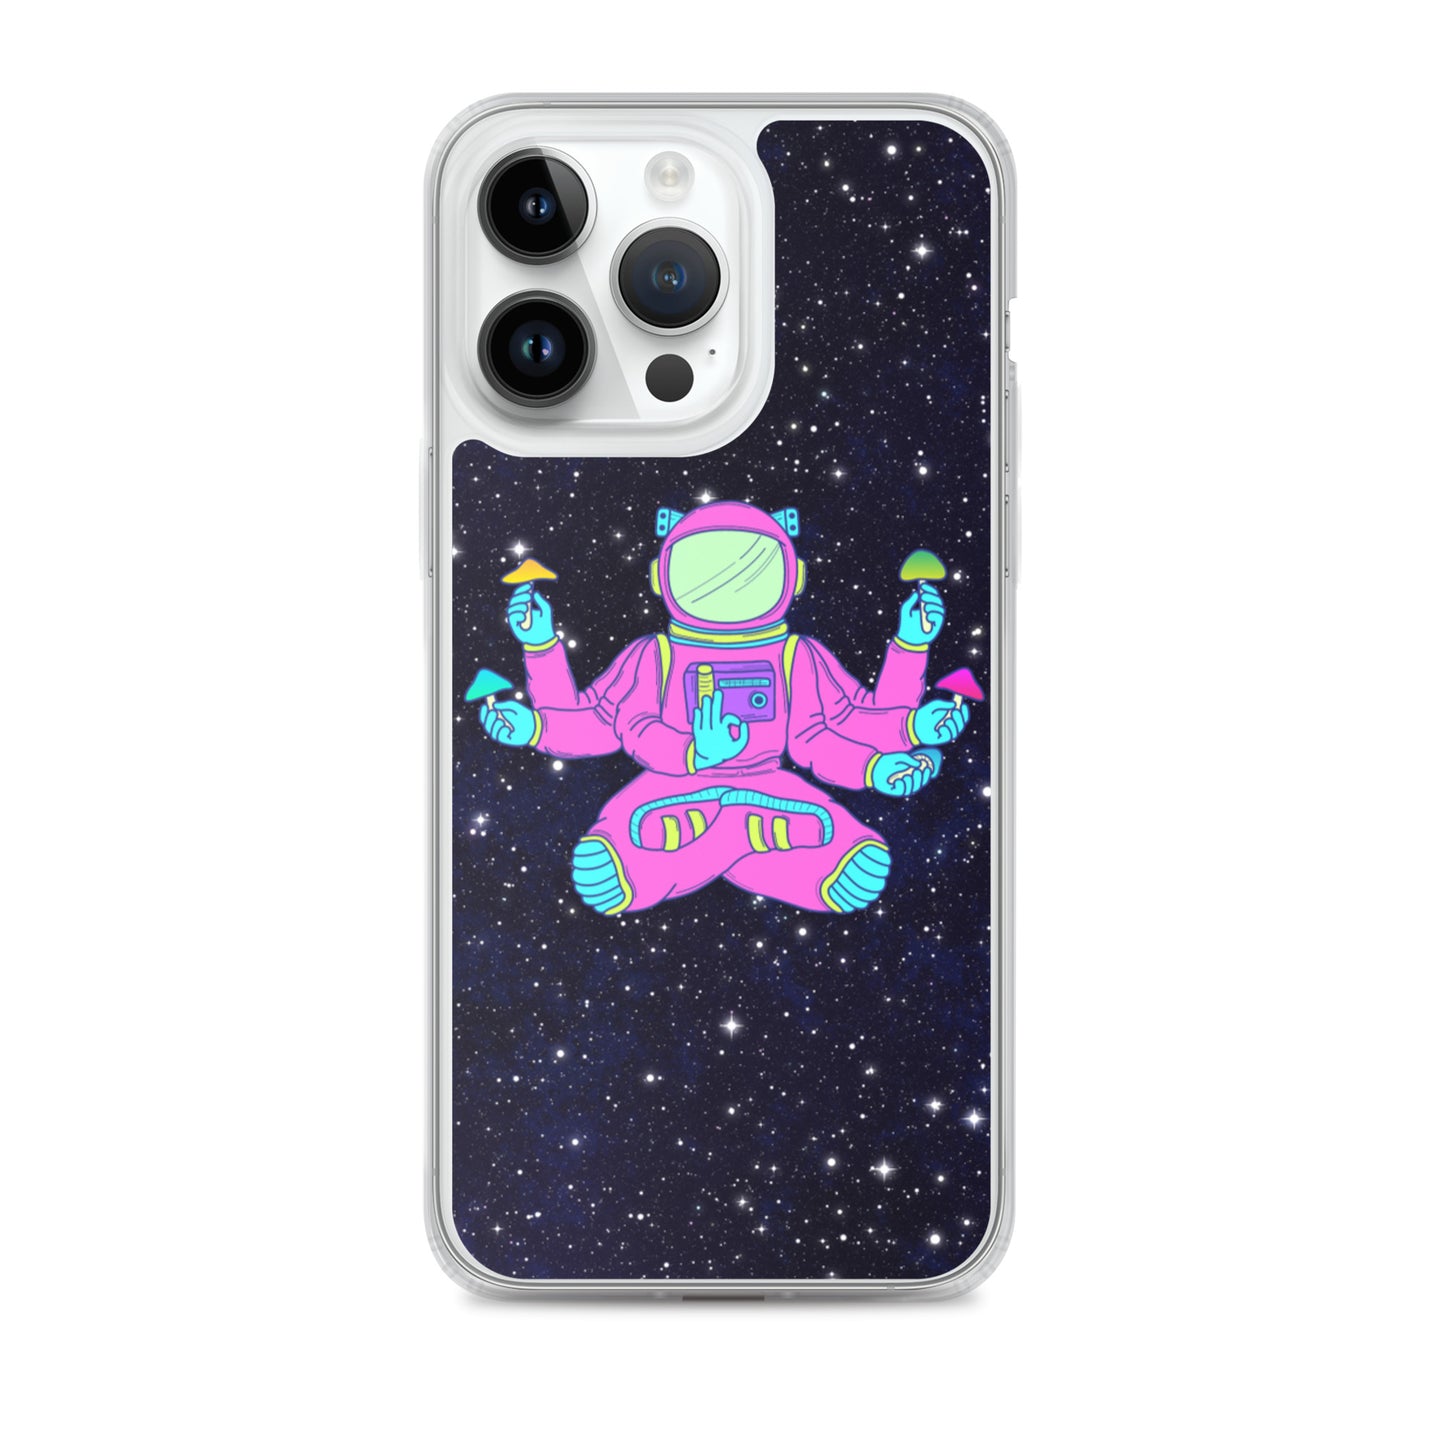 Psi~ Astronaut iPhone Case